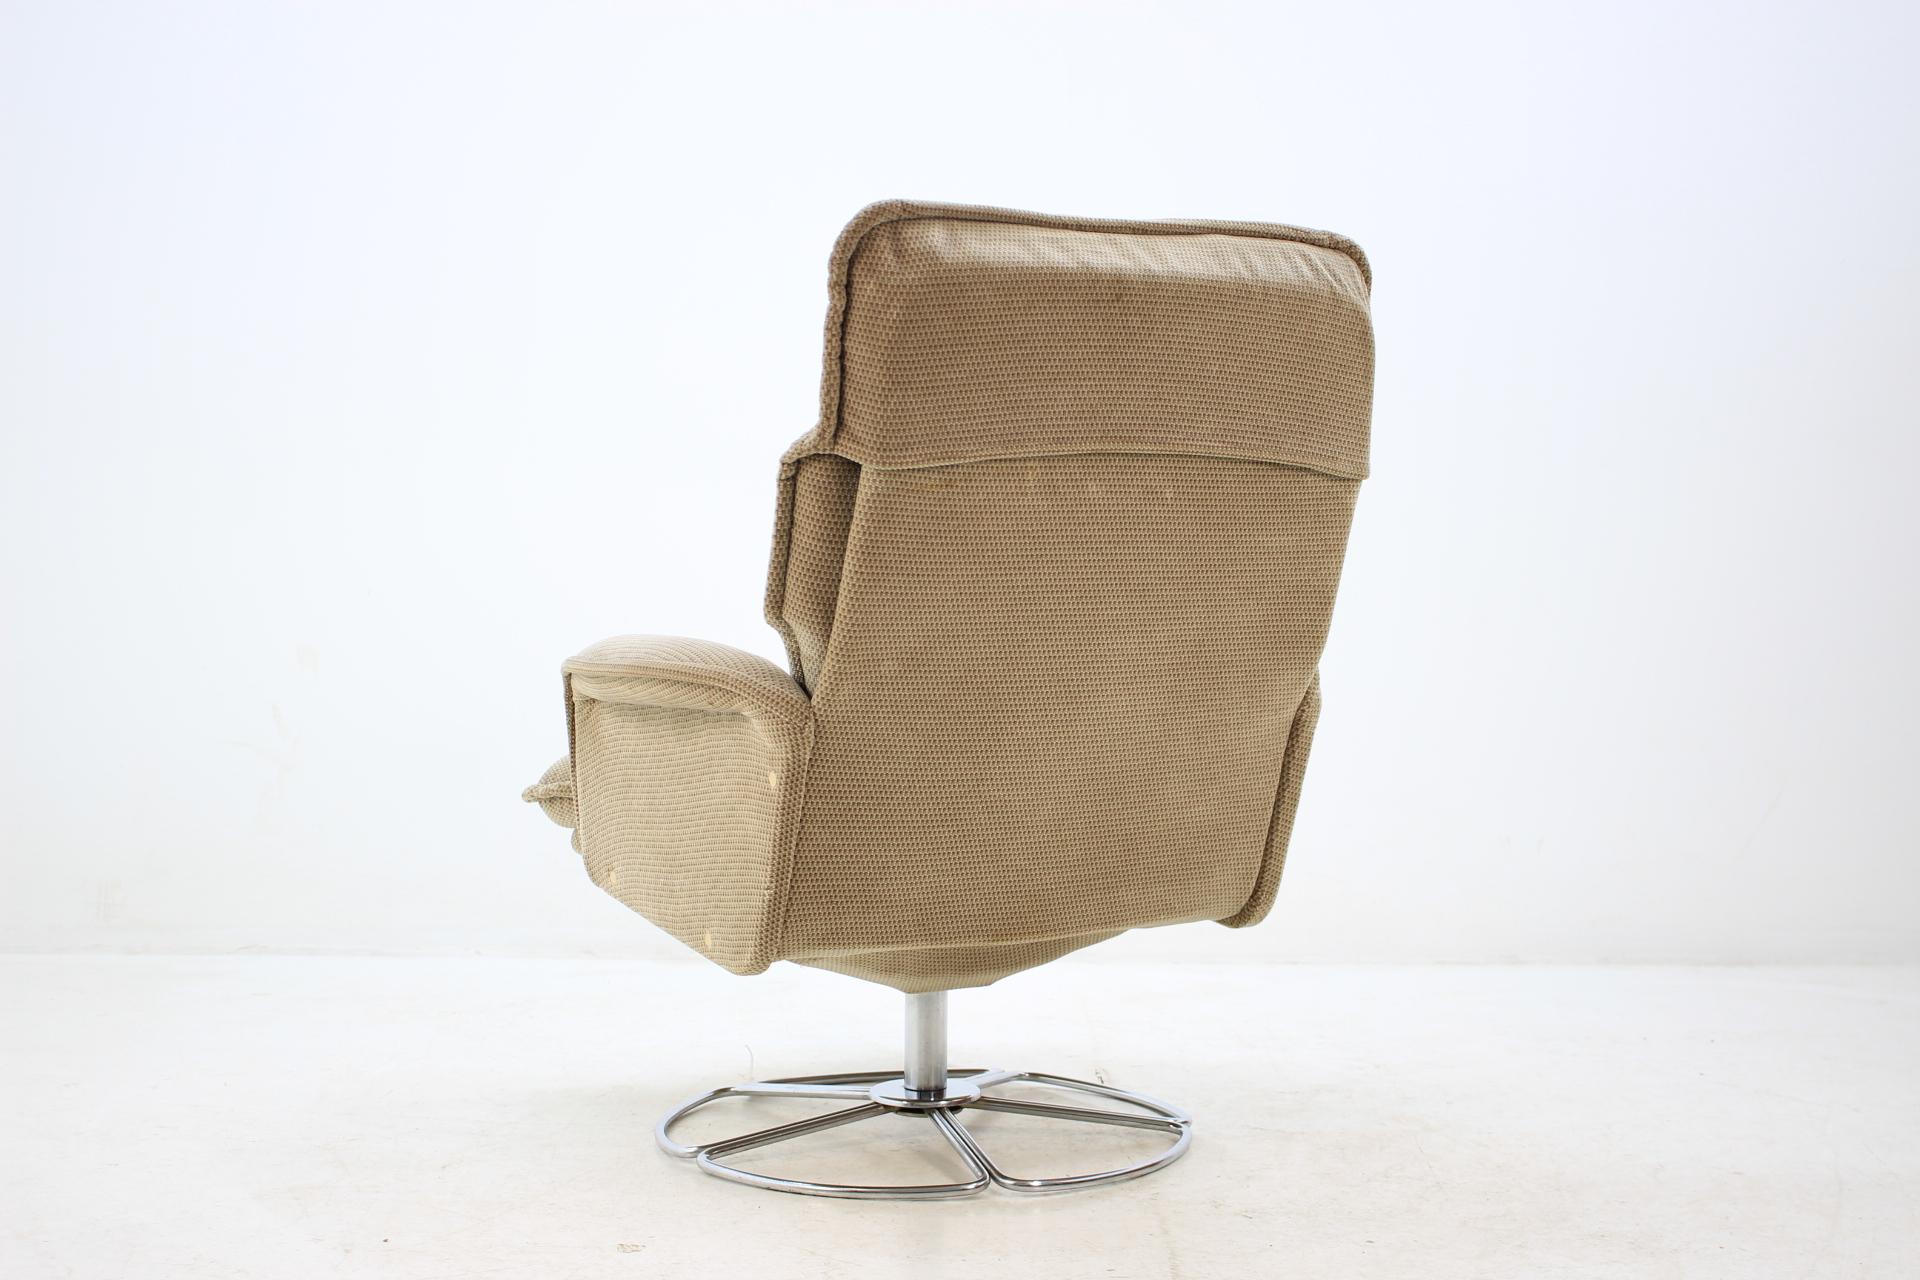 Retro Sweden Swivel Chair in Style of Bruno Mathsson, 1970s (Tschechisch)